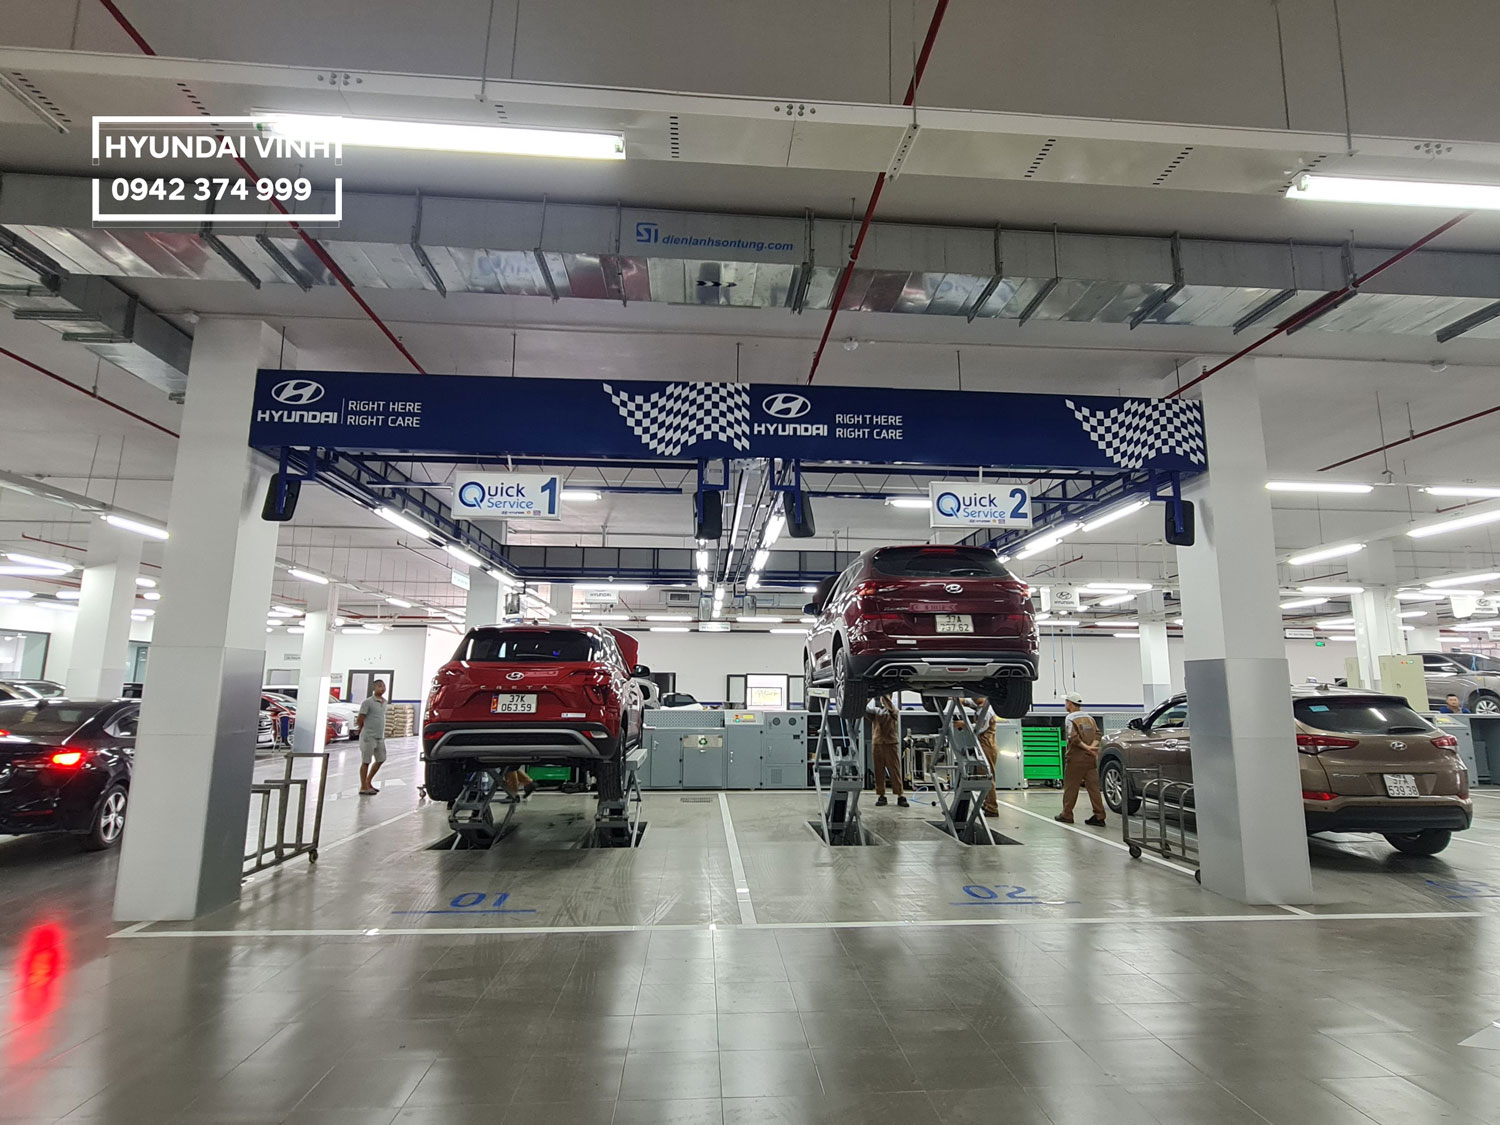 Đội ngũ kỹ thuật viên chuyên nghiệp và cơ sở vật chất hiện đại tại Hyundai Vinh